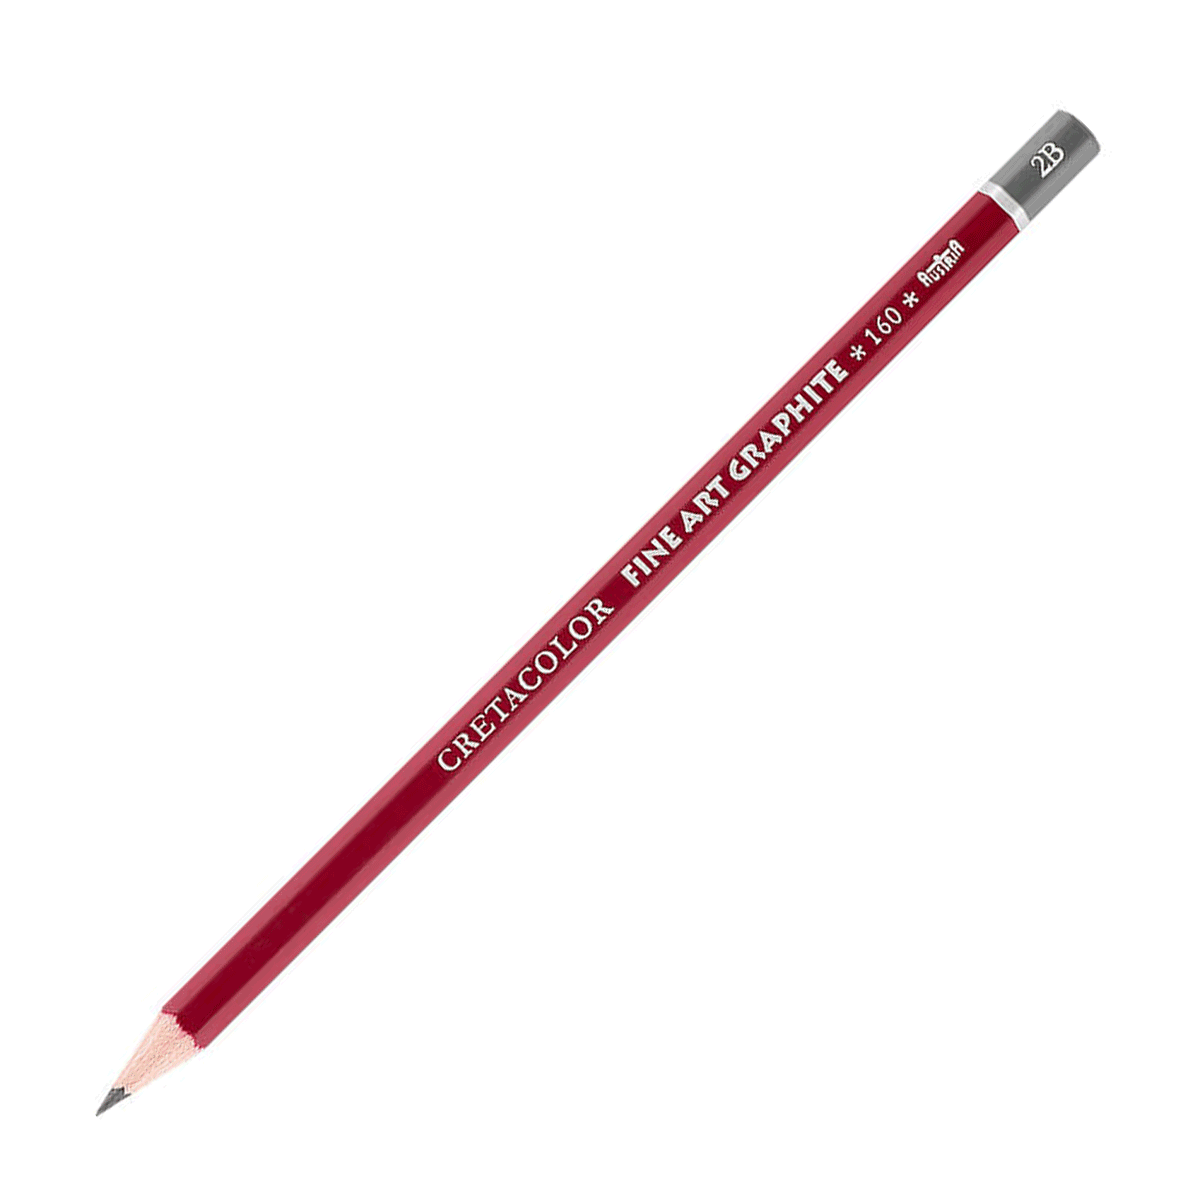 Cretacolor Fine Art Red Graphite Pencil - 2B